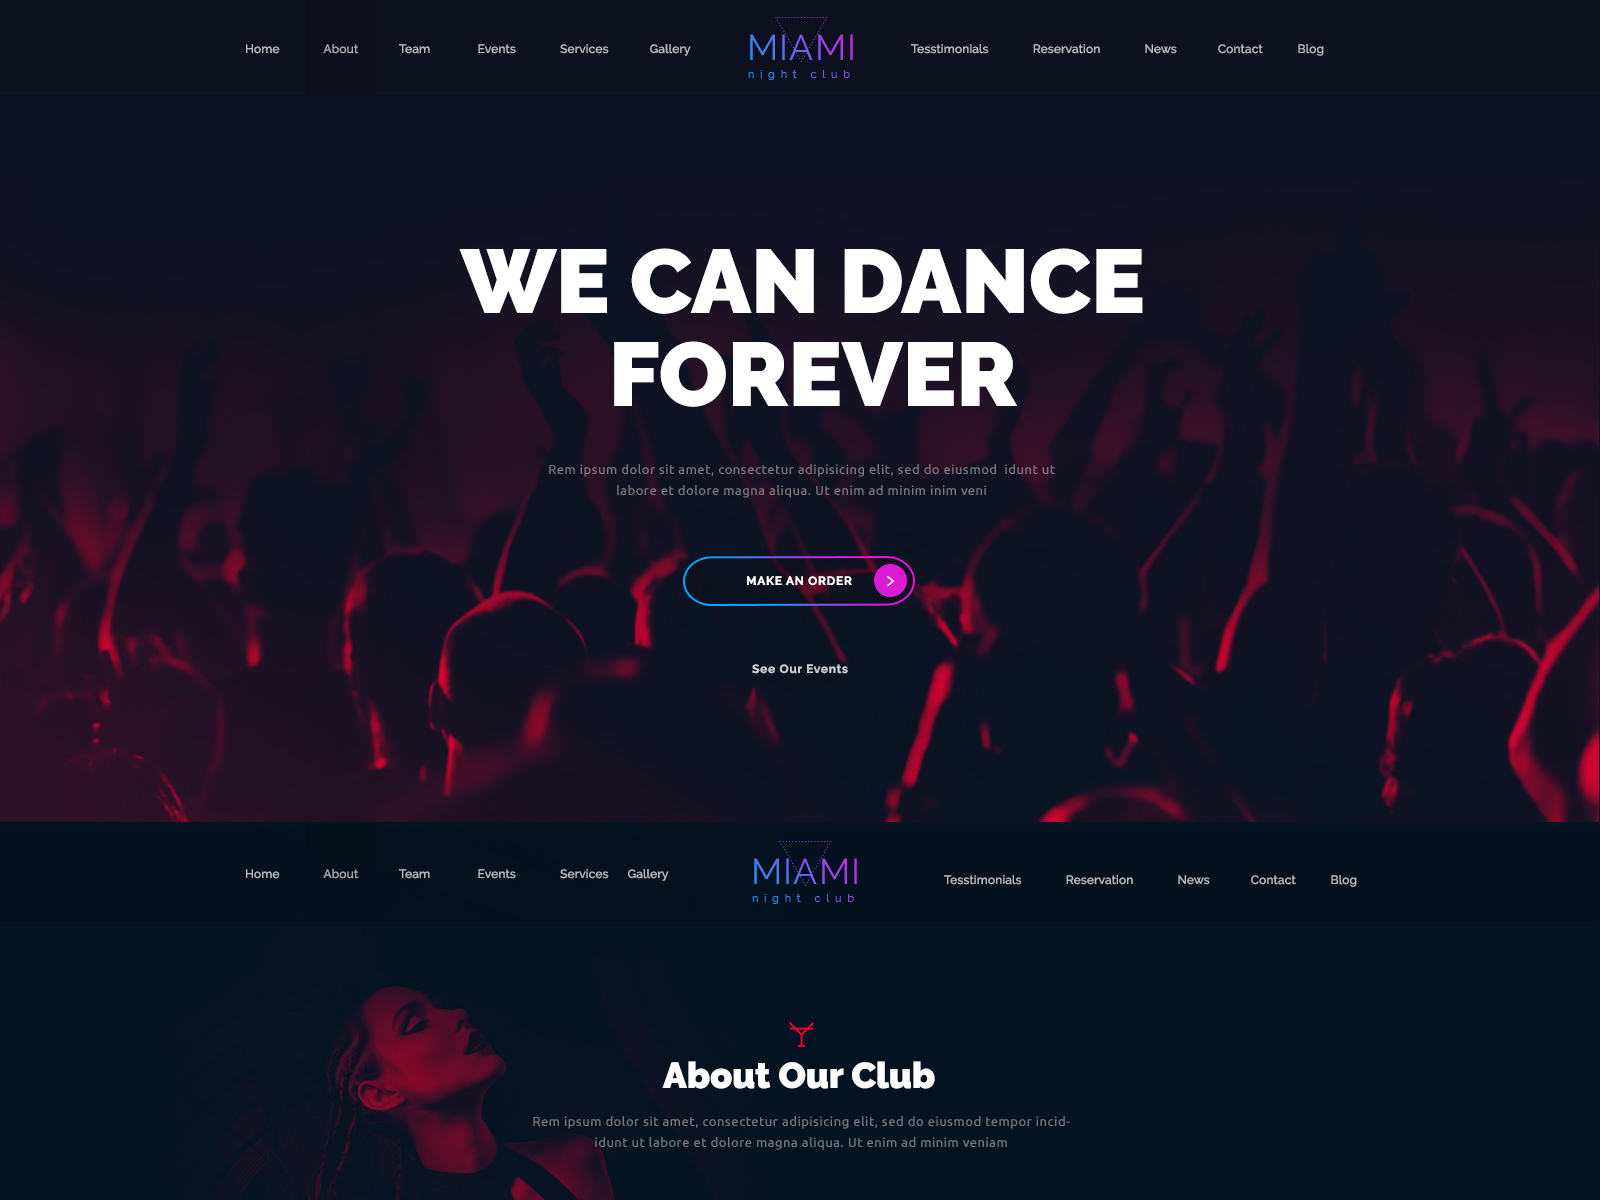 Order events. Miami Disco.